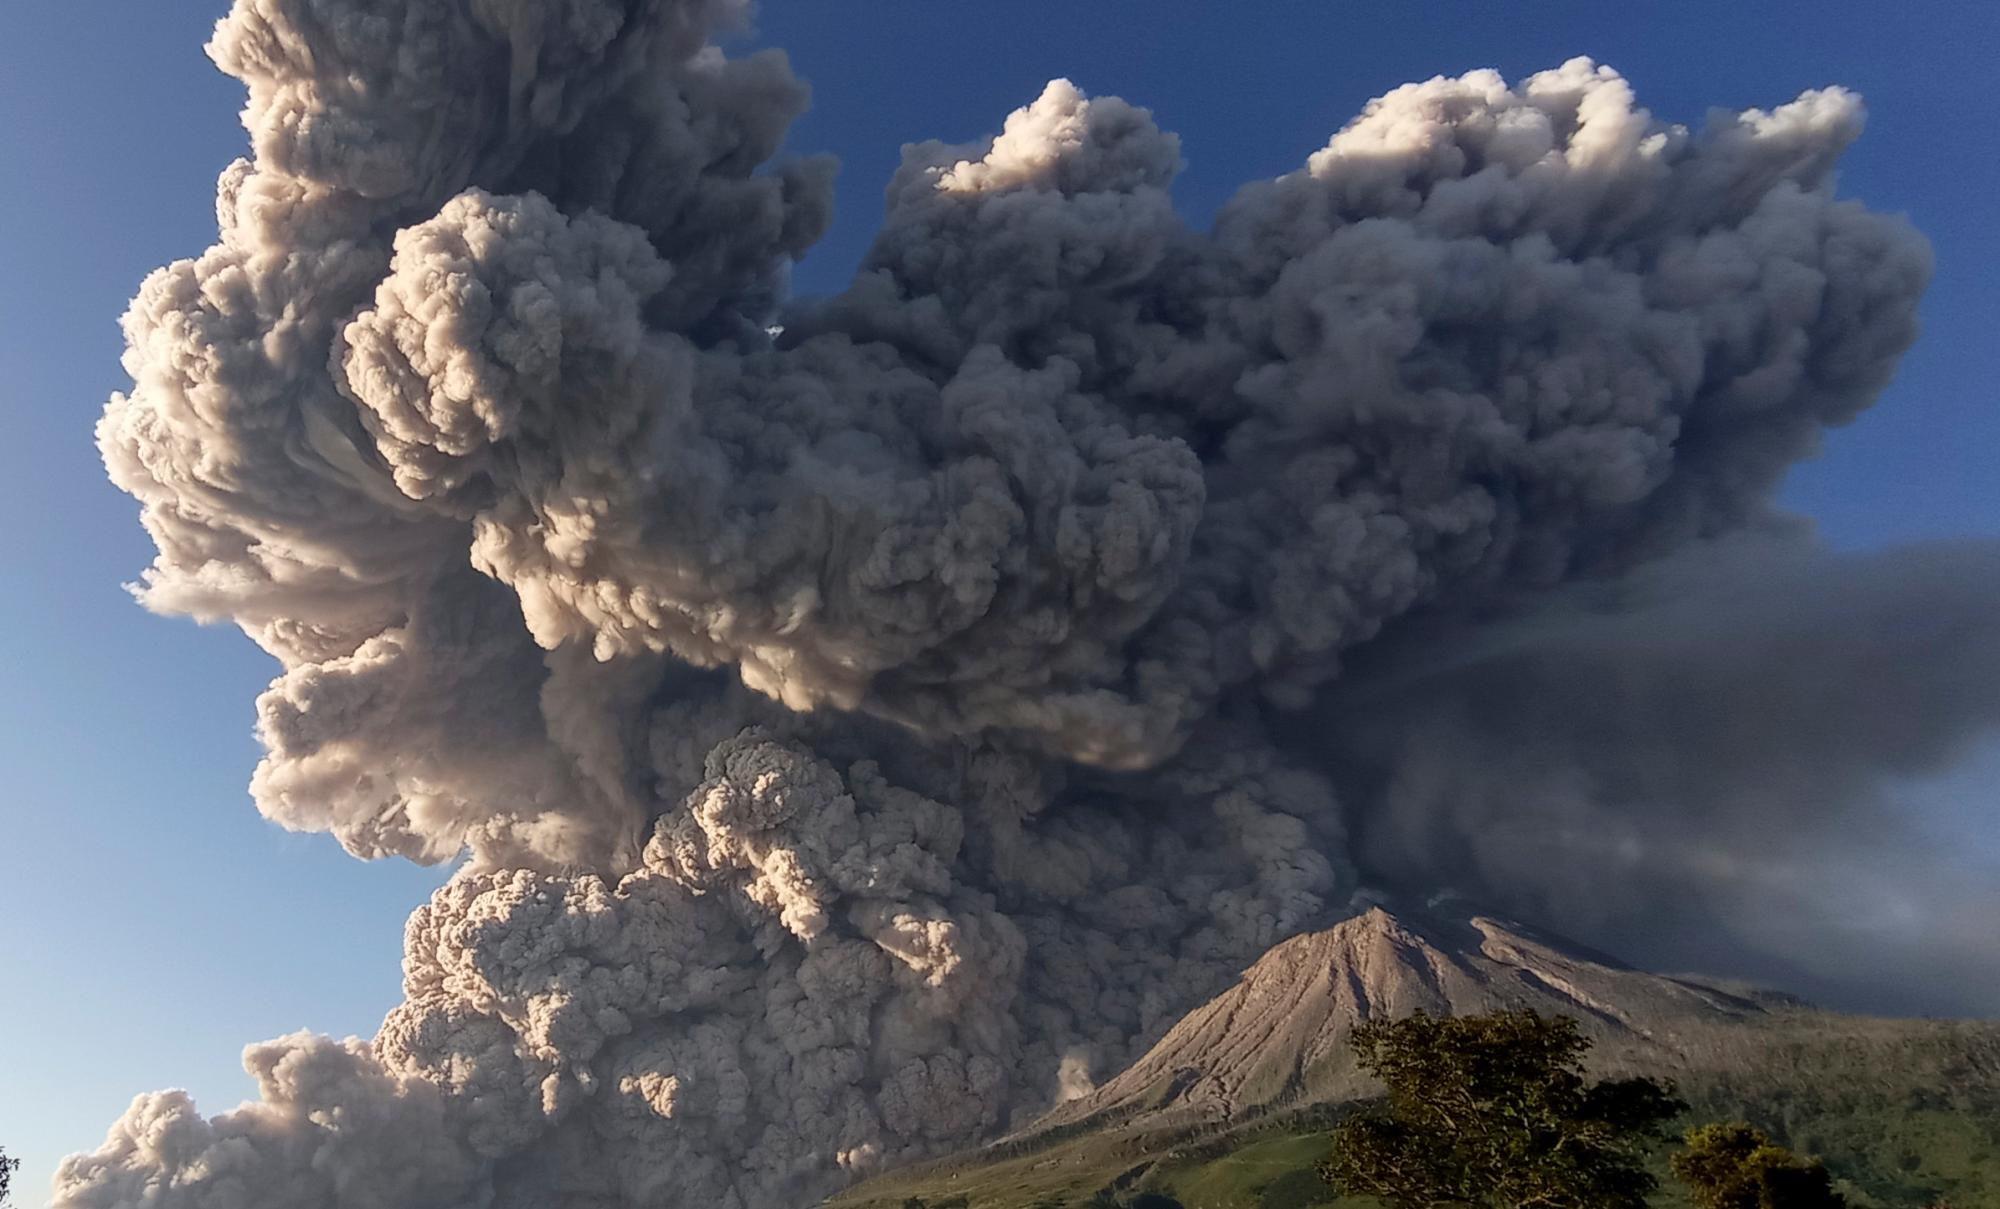  El monte Sinabung arroja material volcánico durante una erupción en Karo, en el norte de Sumatra, Indonesia, el martes 2 de marzo de 2021. El volcán de 2.600 metros (8.530 pies) entró en erupción el martes, enviando materiales volcánicos a unos pocos miles de metros hacia el cielo y depositando cenizas en las aldeas cercanas.